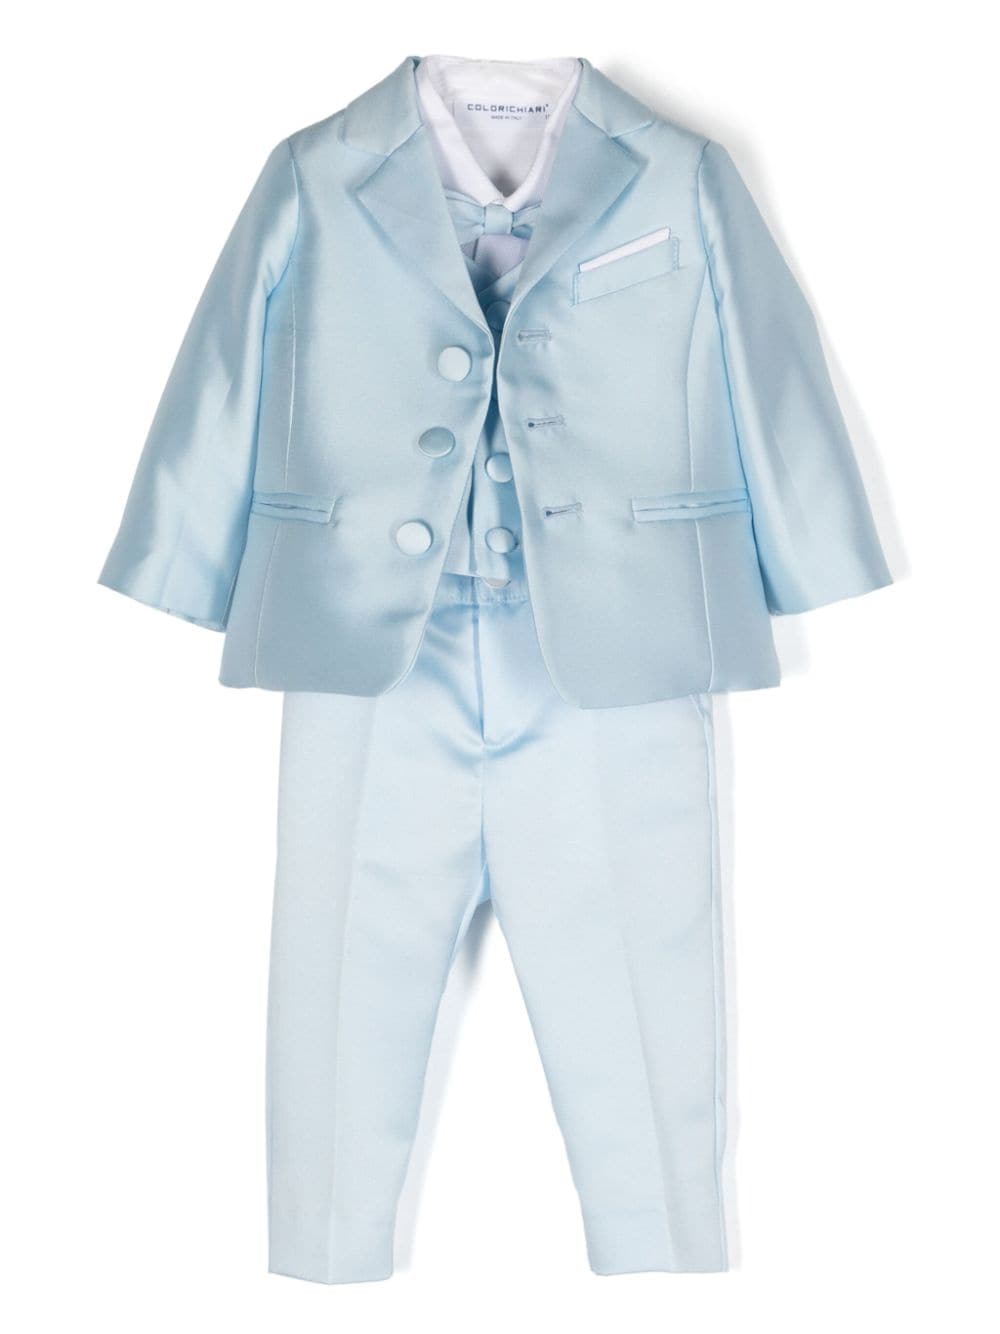 Colorichiari Babies' Bow-detail Trouser Set In Blue